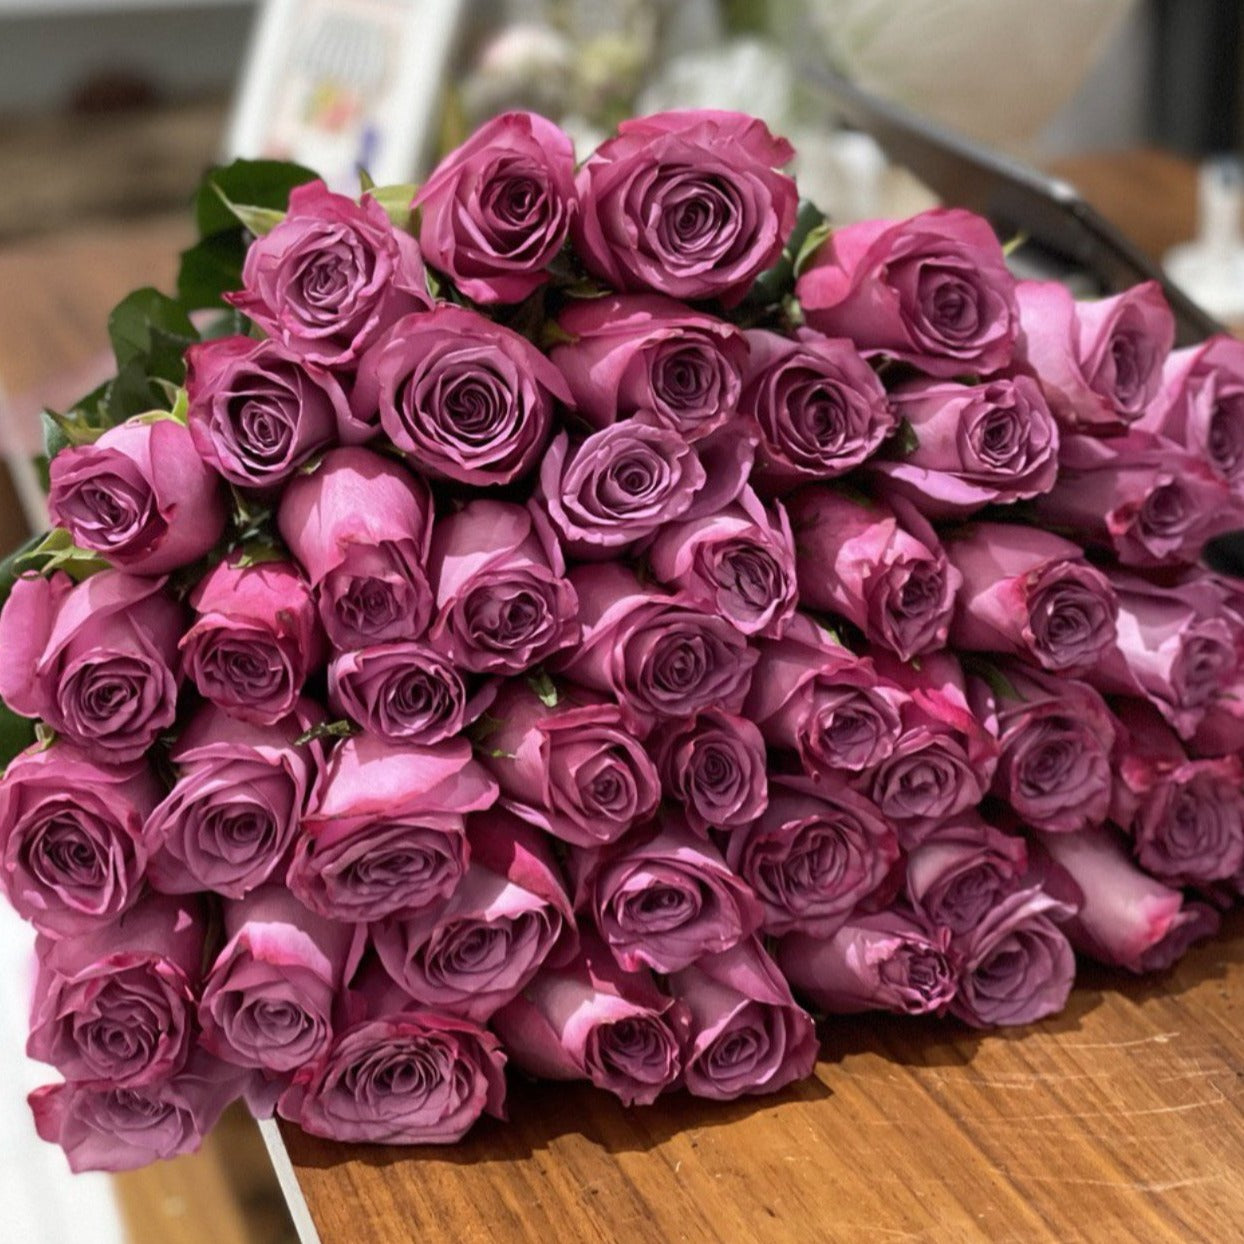 Violeta purple roses